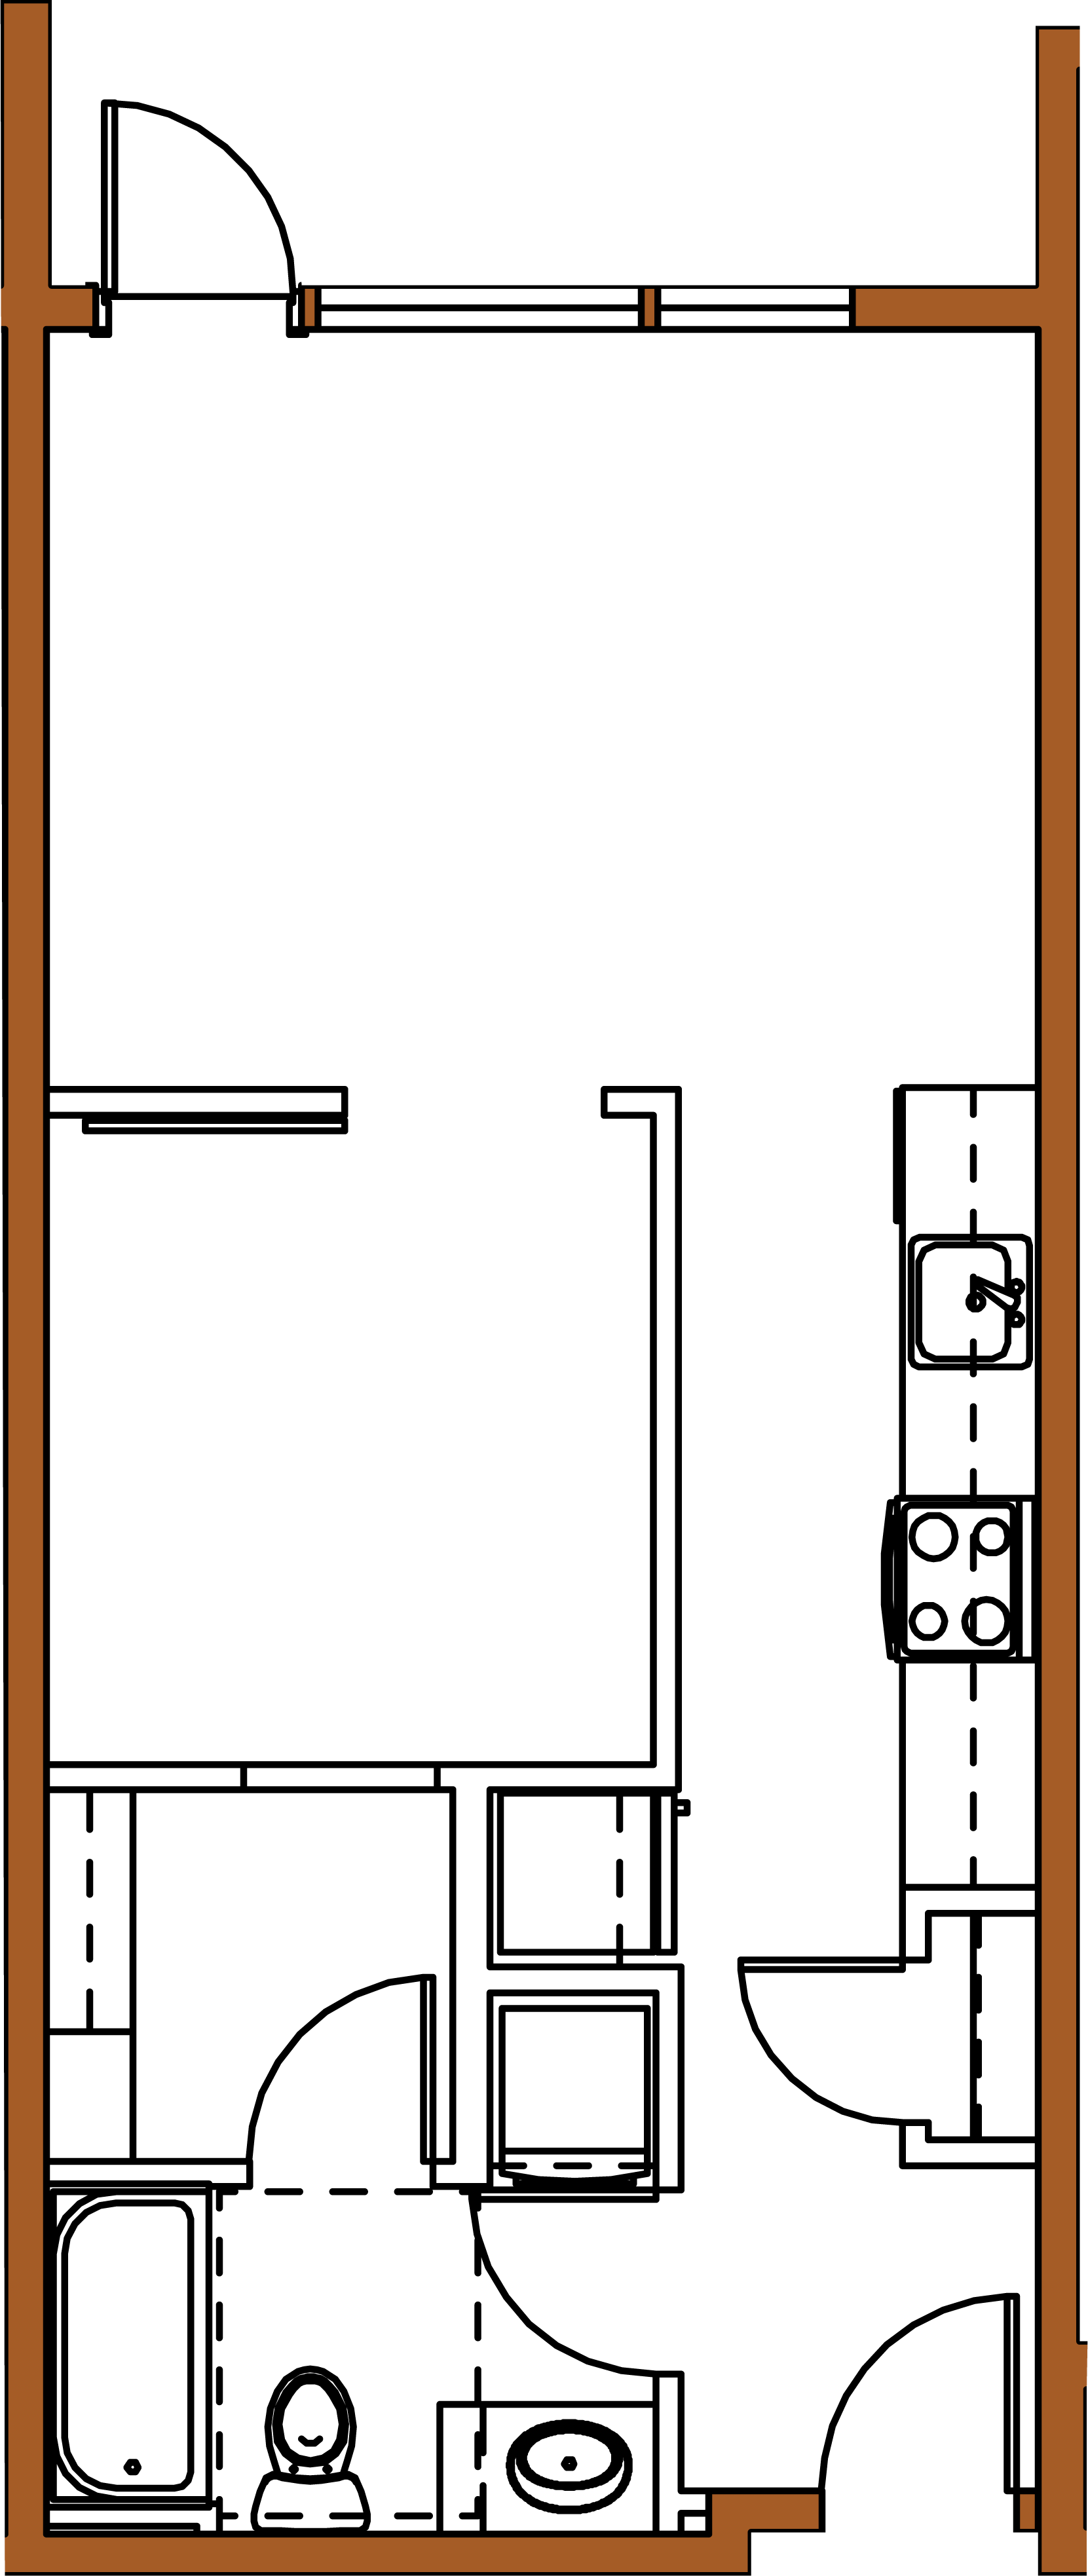 Urbanaire, 1 Bedroom, Galley - Floorplan.png